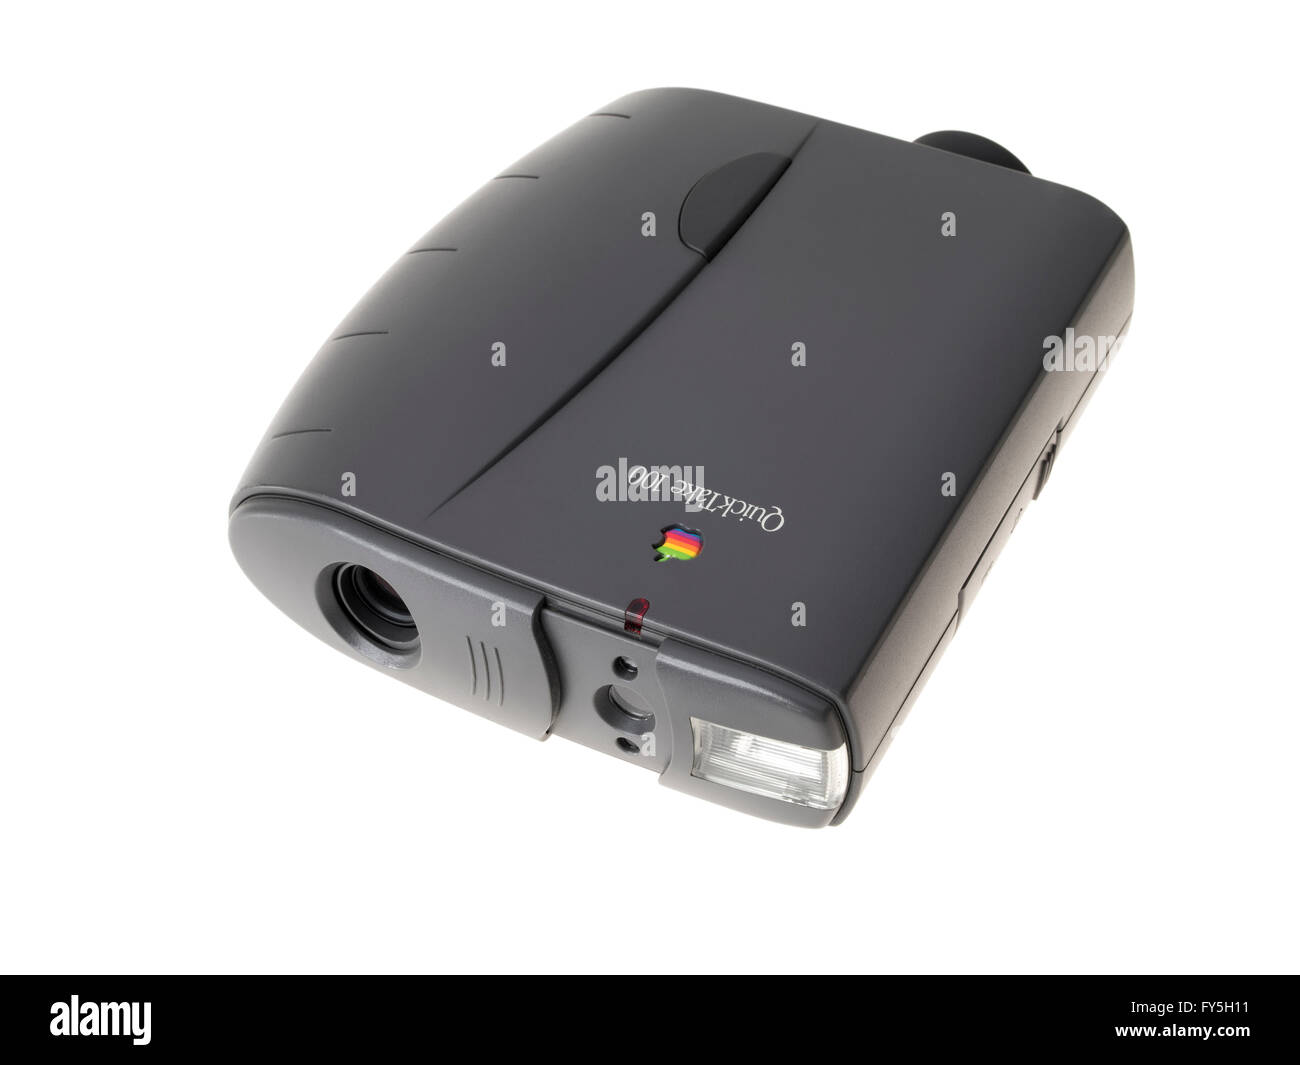 Apple QuickTake 100 appareil photo numérique du consommateur 1994 publié par Apple Computer avec des images de 640×480 pixels Banque D'Images